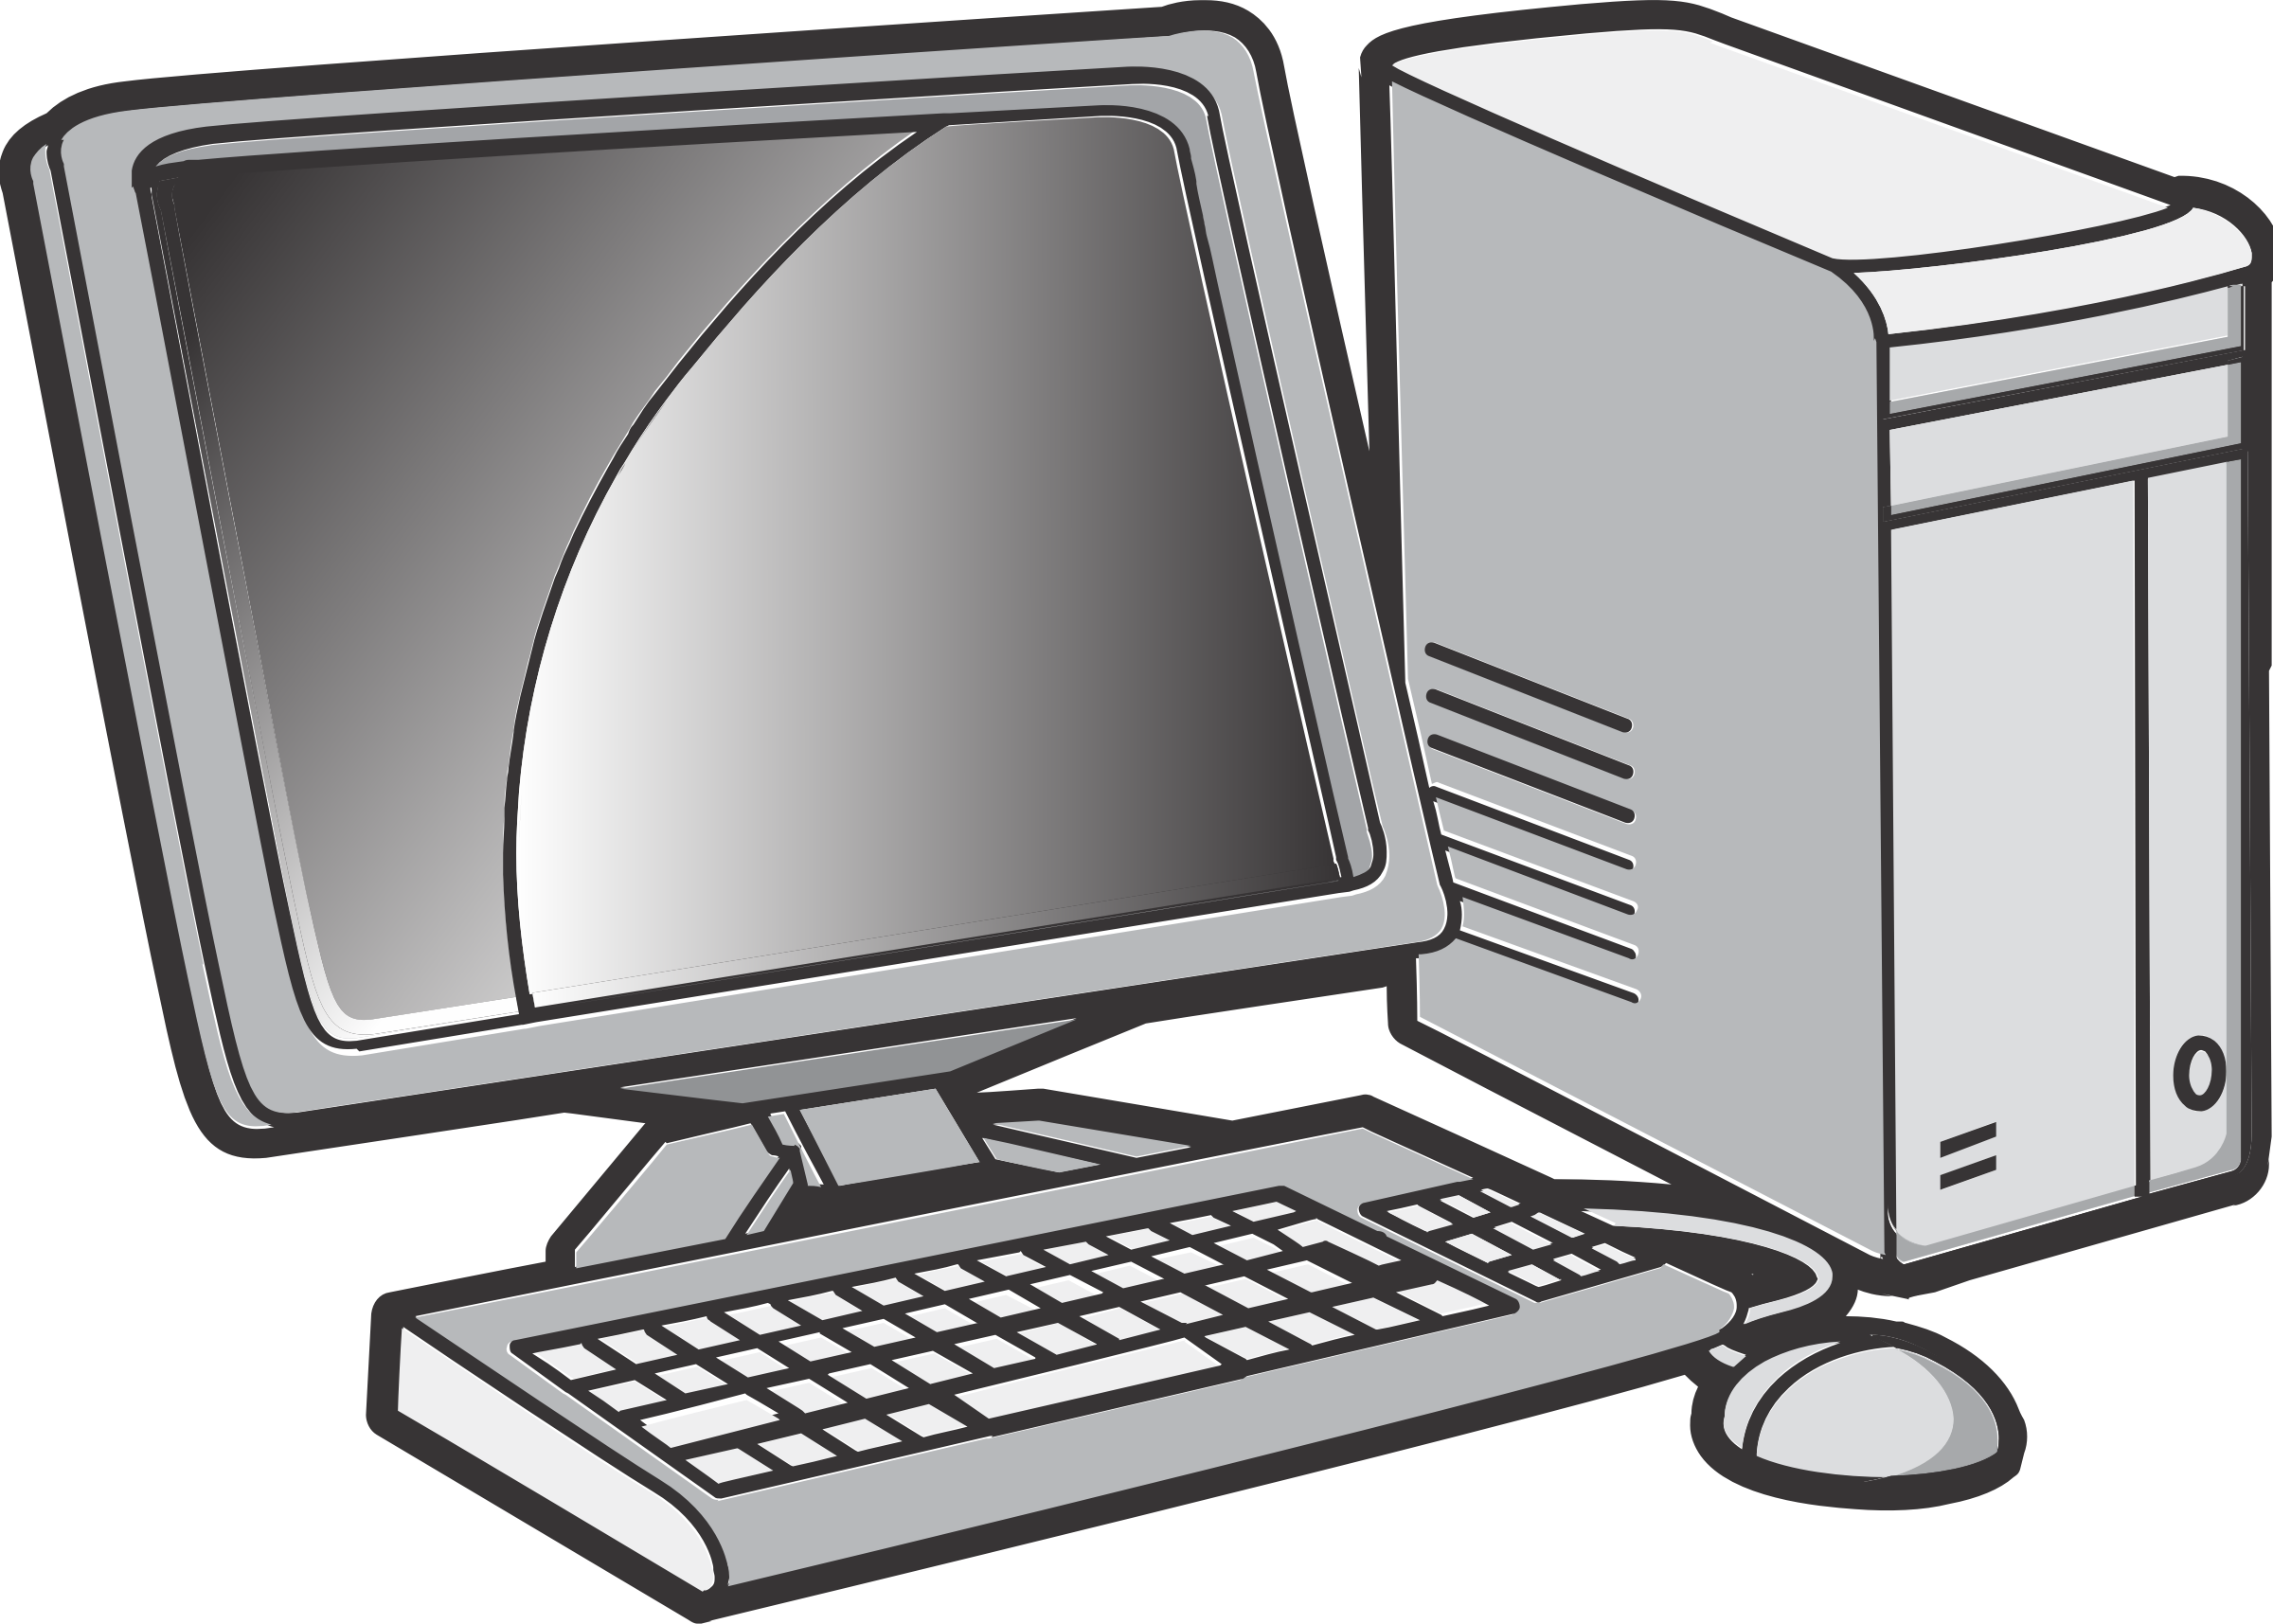 Big image png. Clipart computer desktop computer